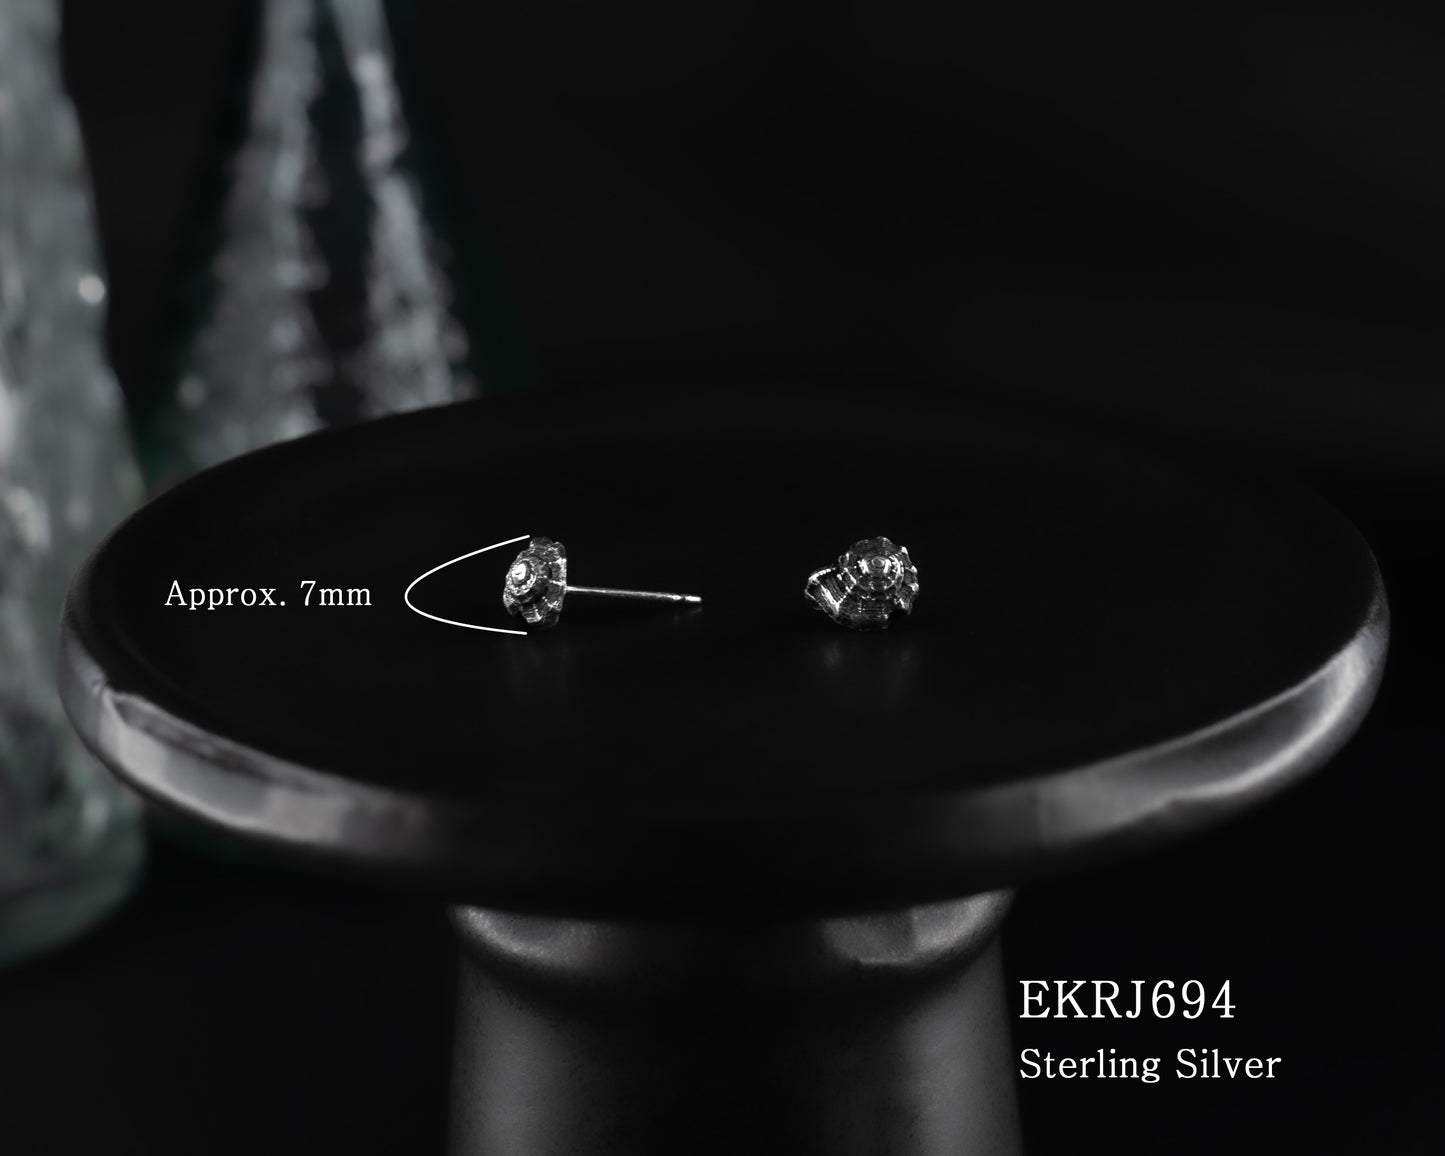 EKRJ694 Sterling Silver Conch Shell Earrings